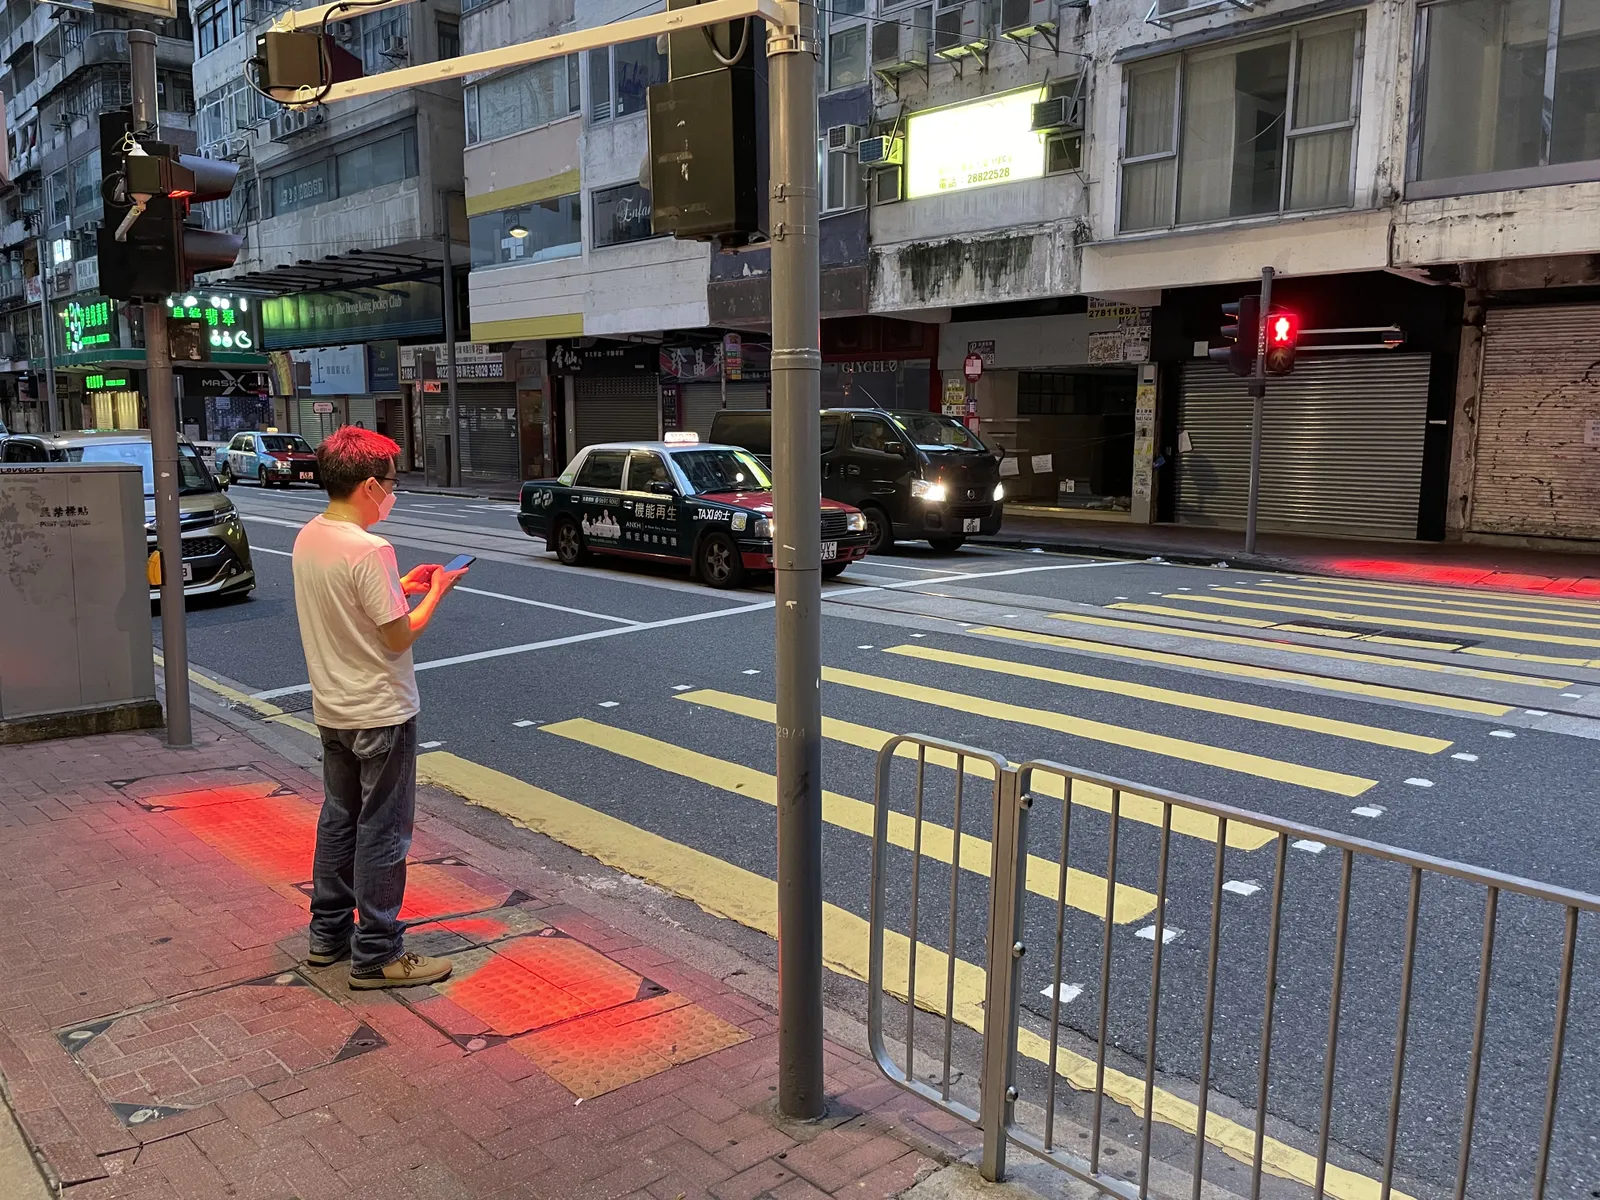 Crosswalk accident. Pedestrian with smartphone and headphones